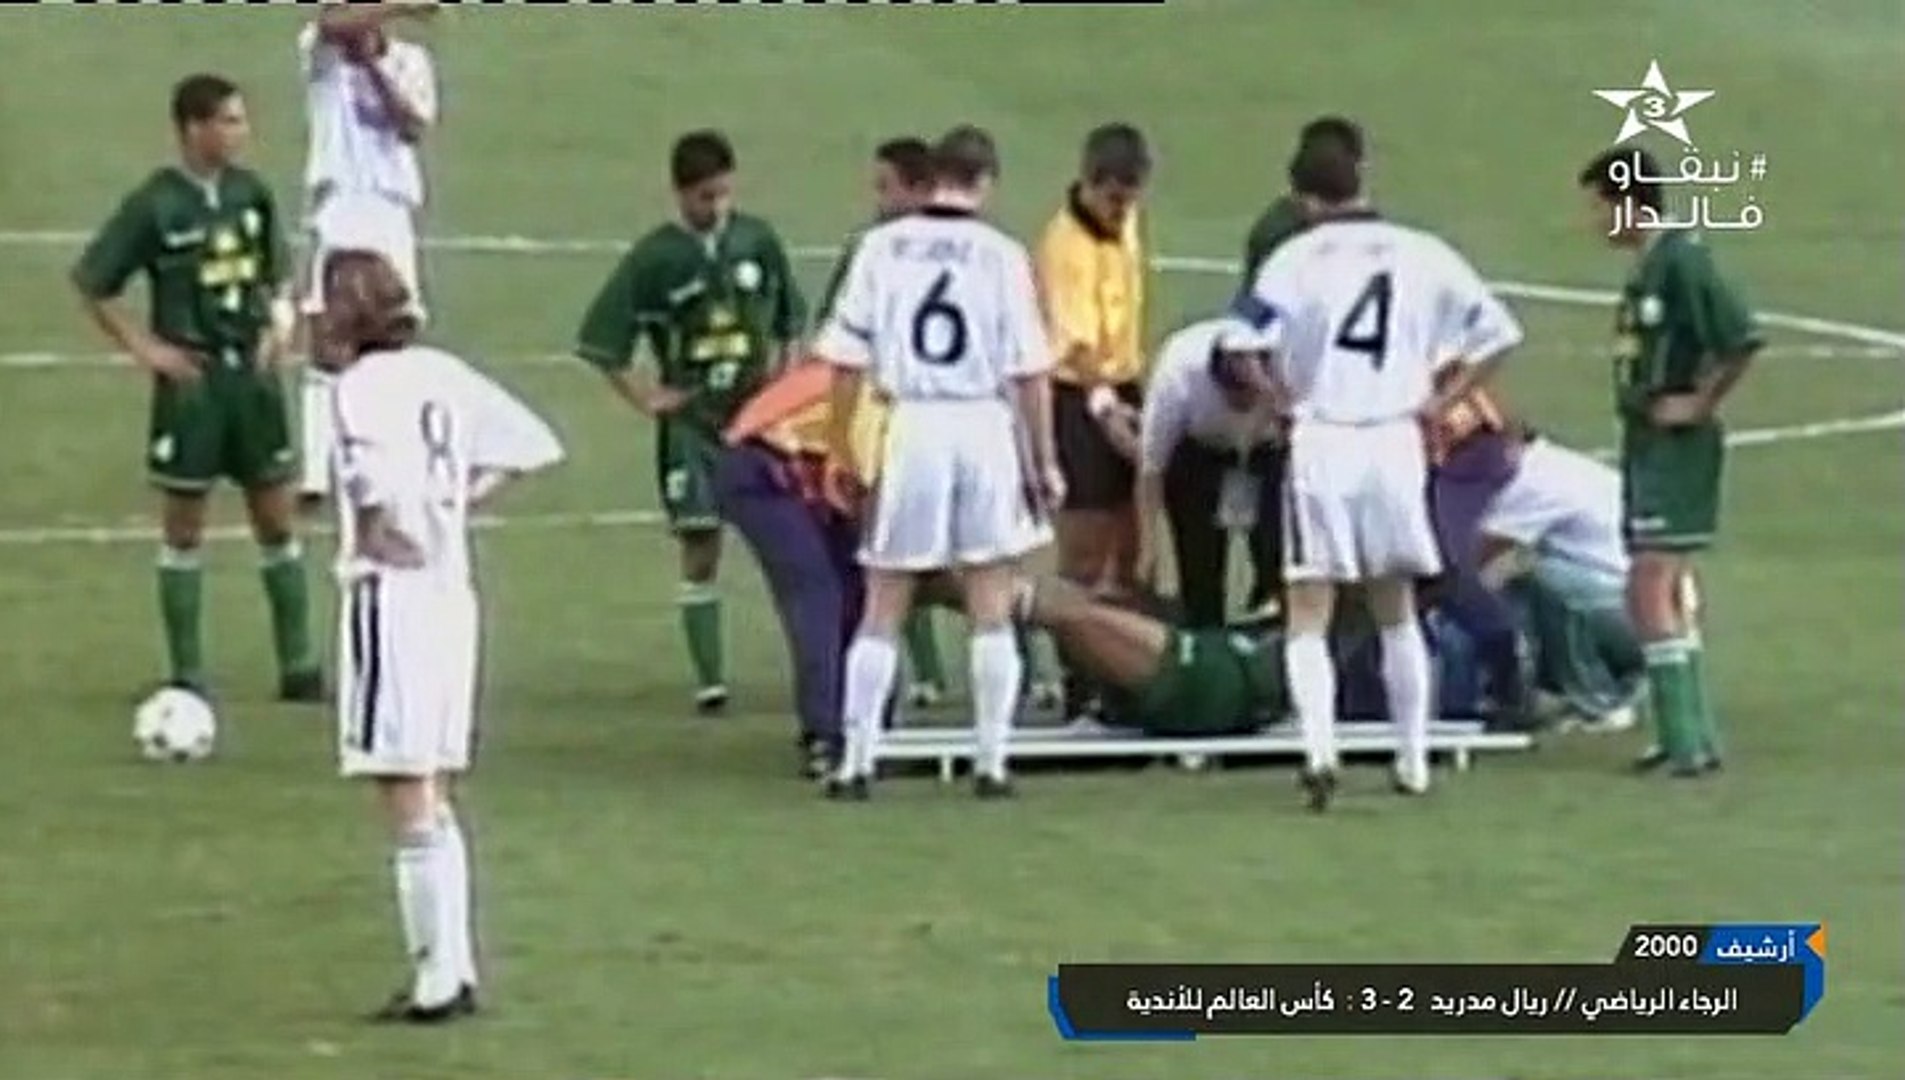 الشوط الاول مباراة ريال مدريد و الرجاء الرياضي 3-2 كاس العالم للاندية 2000  - Vidéo Dailymotion